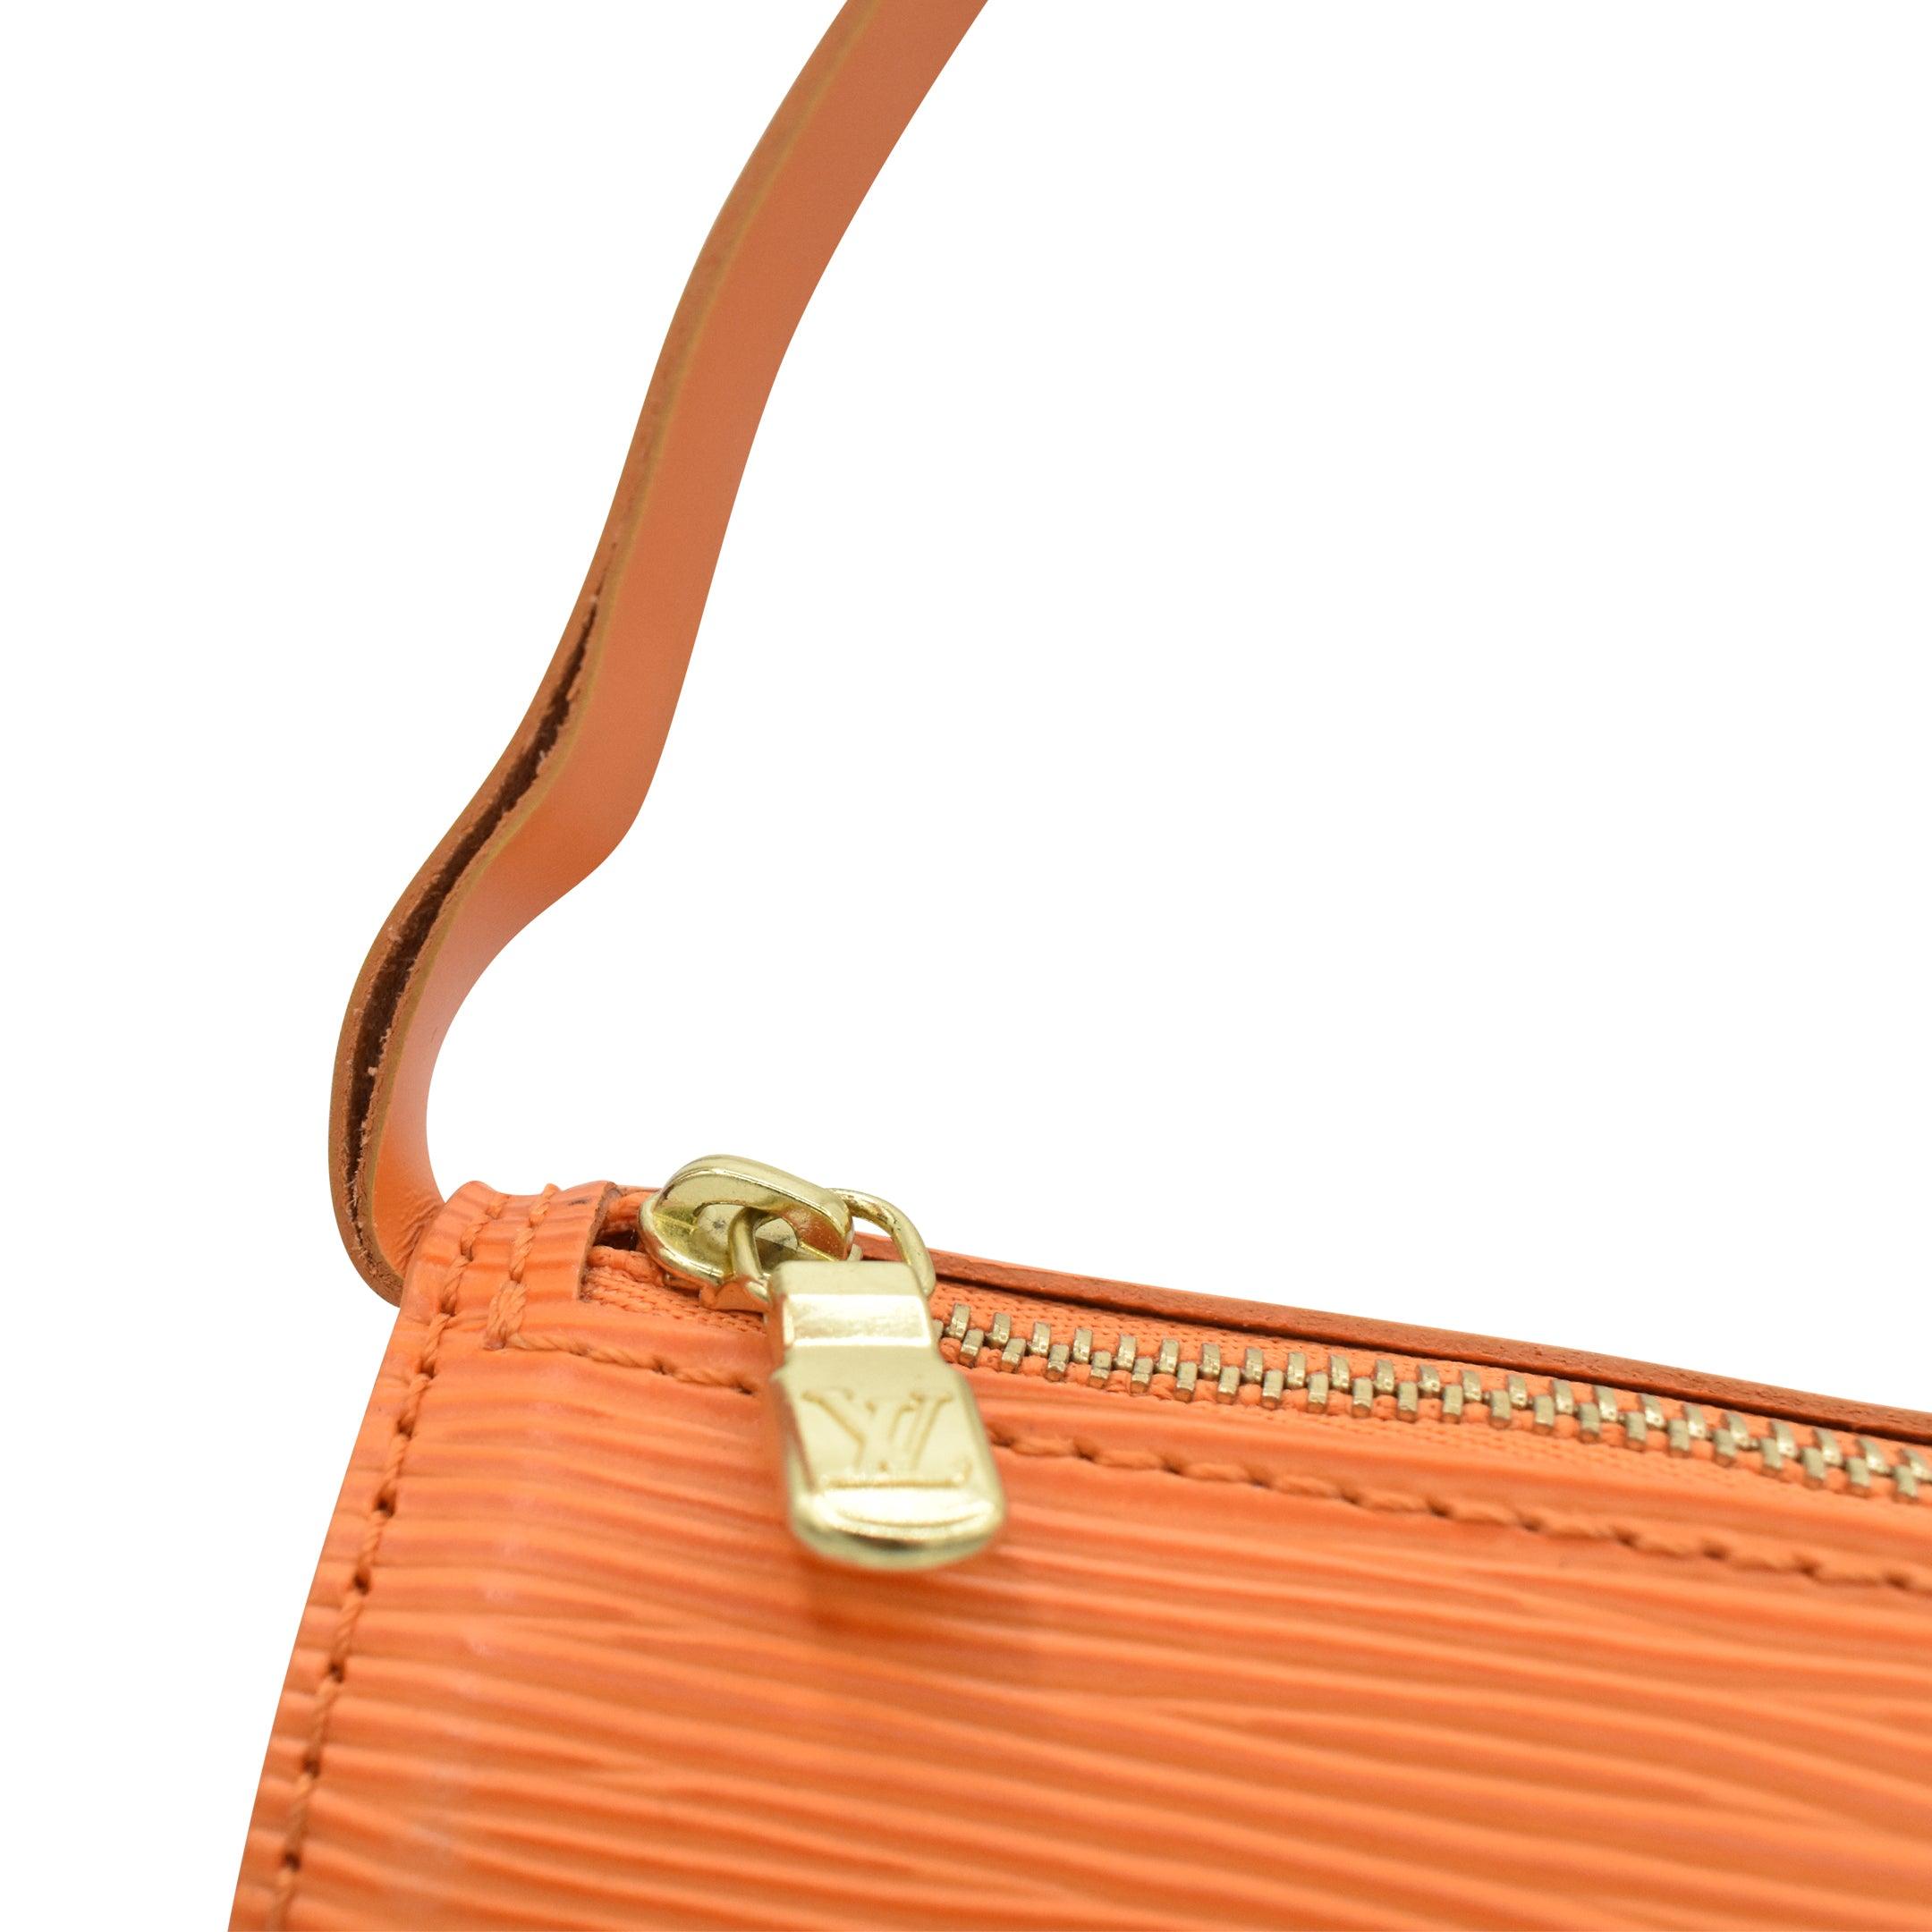 Louis Vuitton 'Papillon Pochette' Bag - Fashionably Yours